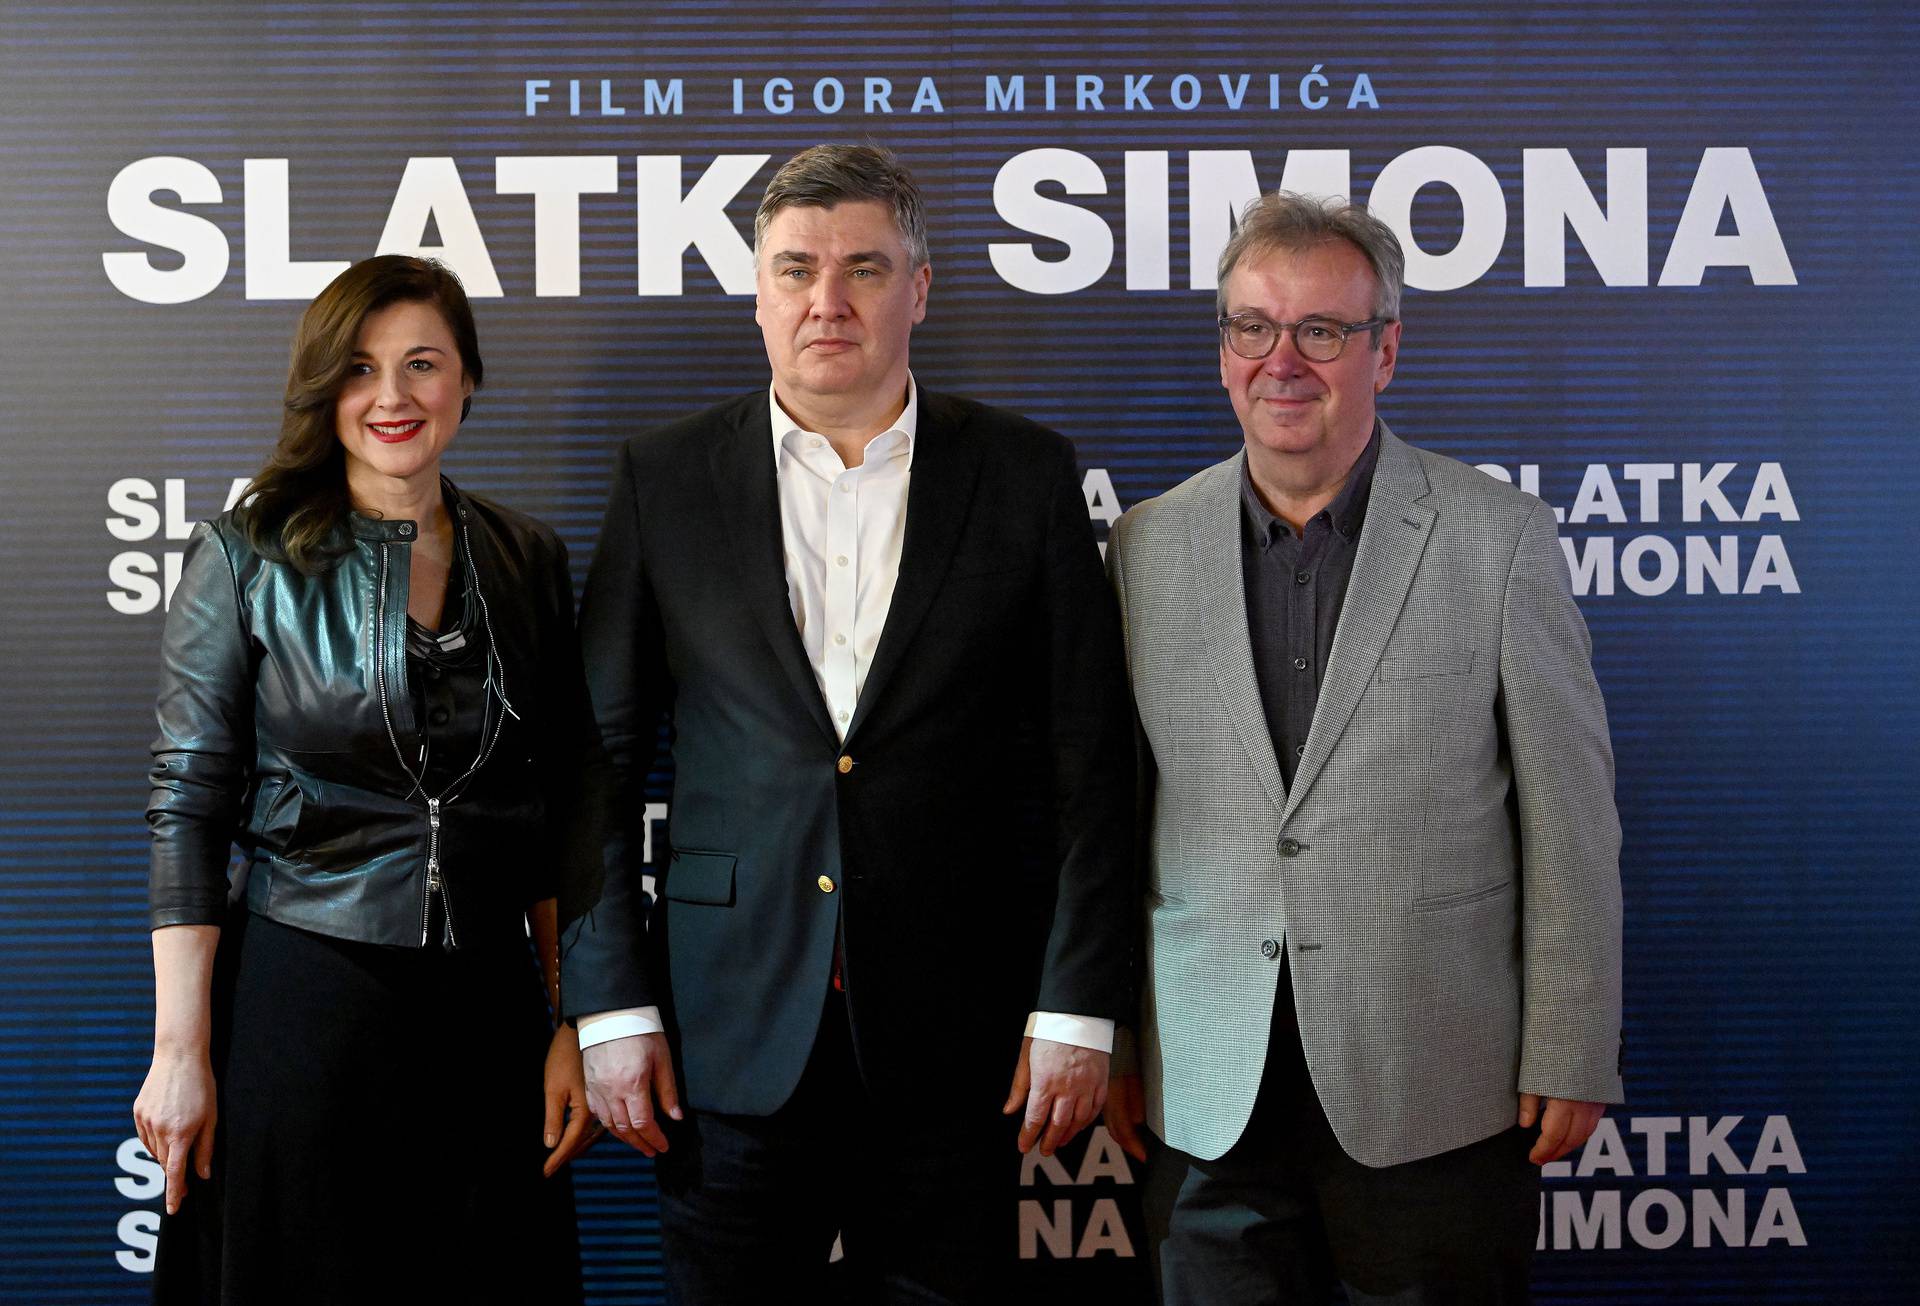 Zagreb: Predsjednik Milanović u društvu supruge odlazi s premijere filma "Slatka Simona" 